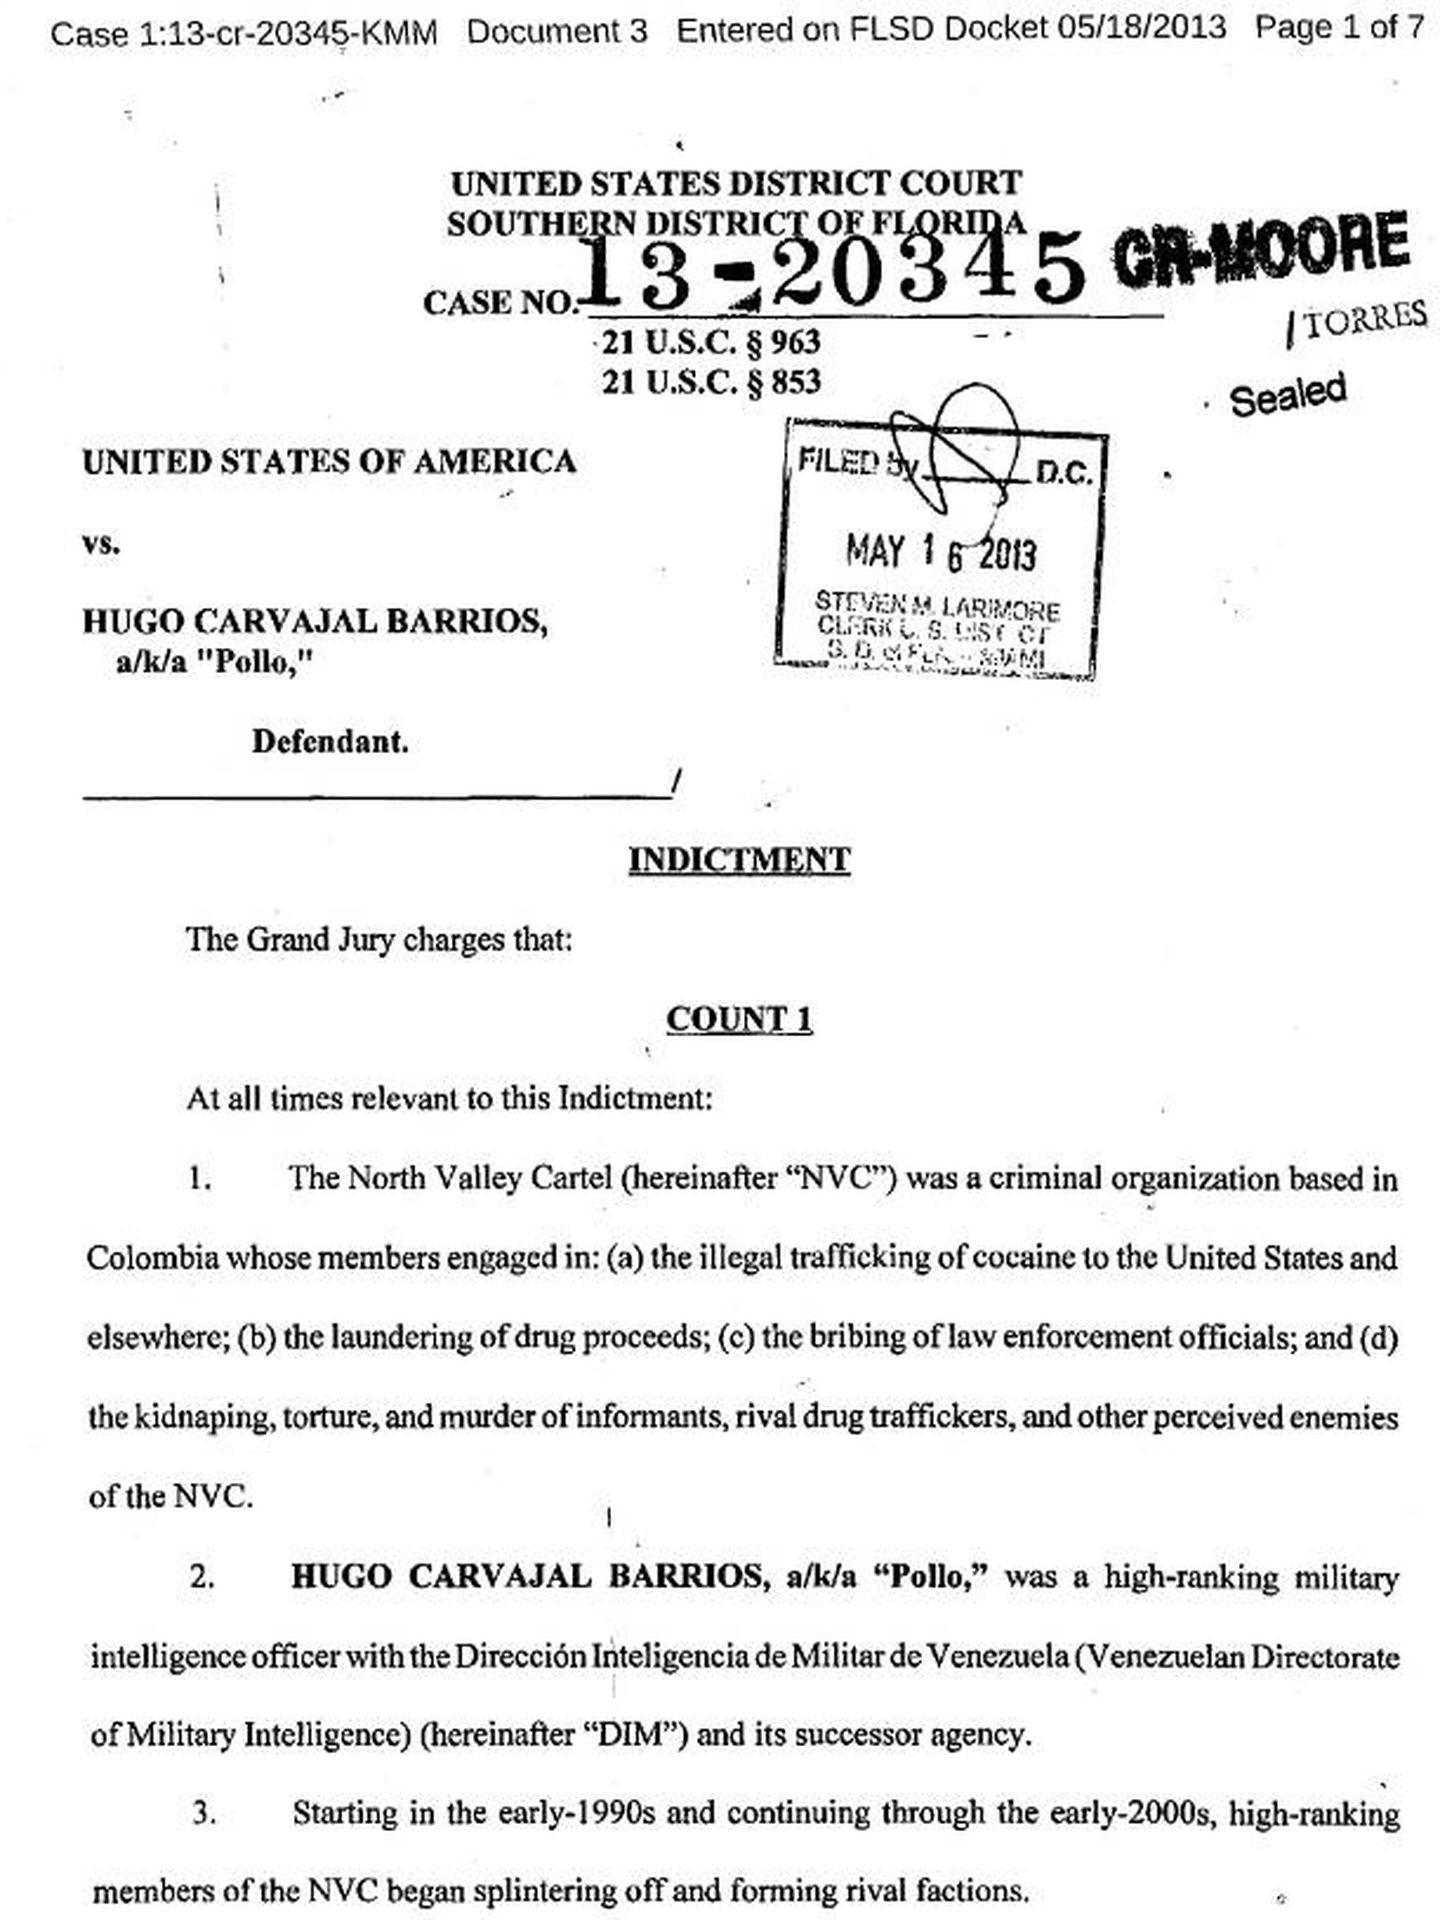 Escrito de acusación por narcotráfico de un tribunal de Florida contra Hugo Carvajal.